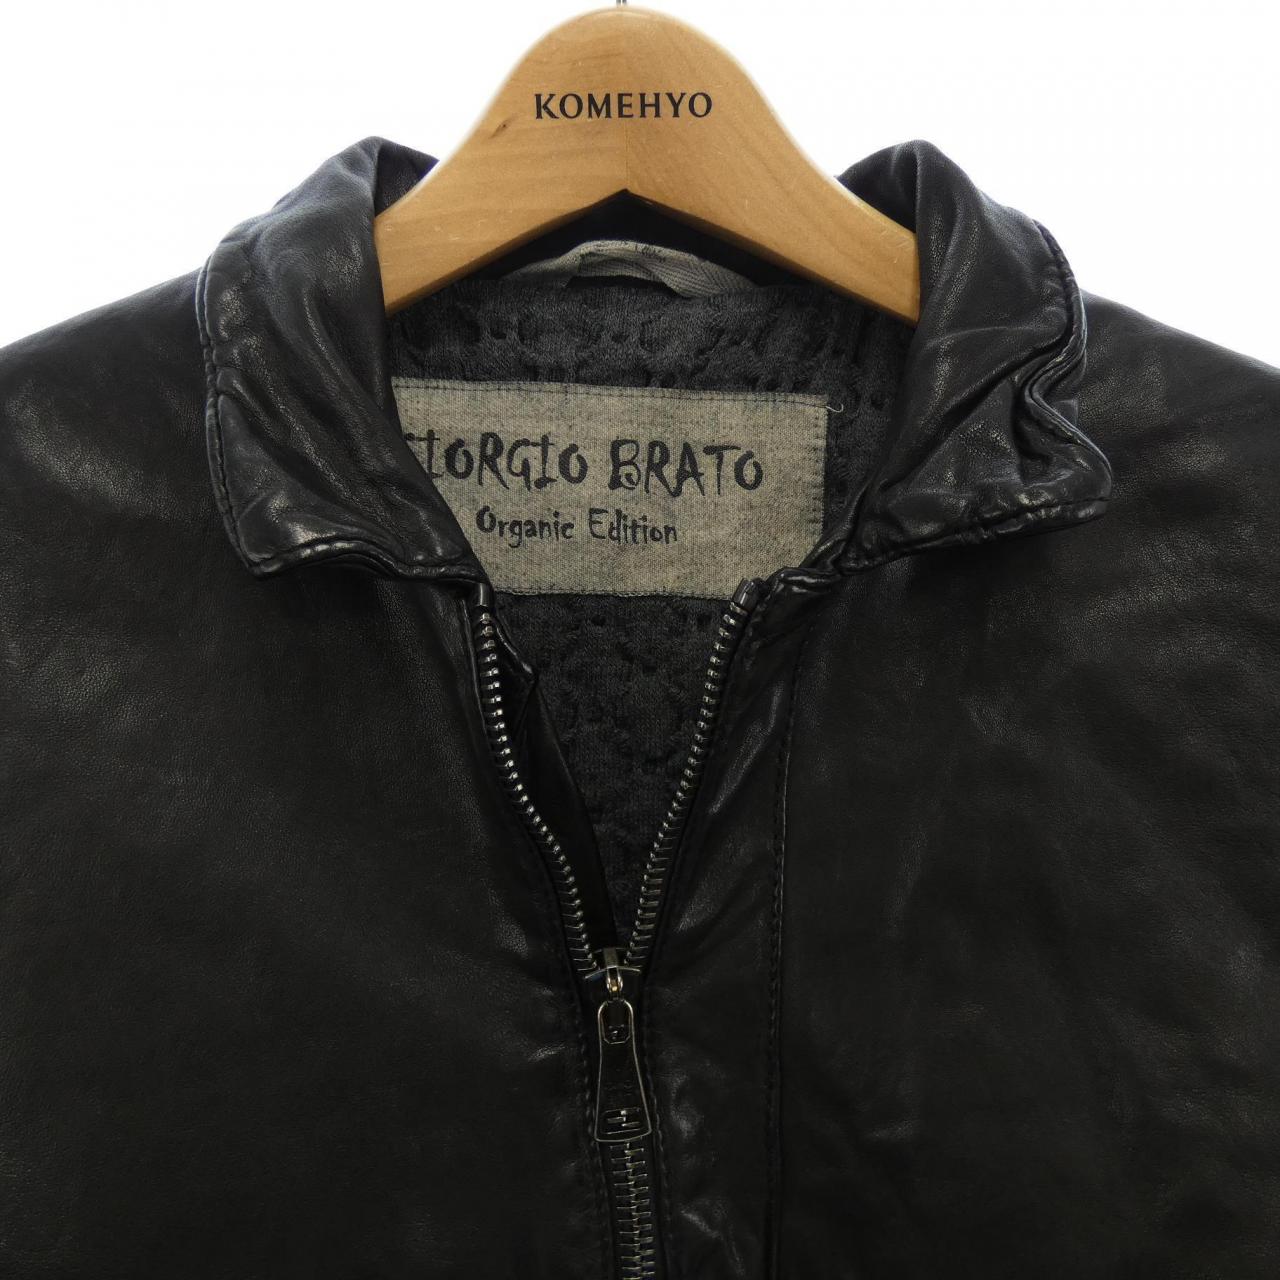 約38cm袖丈ジョルジオブラット GIORGIO BRATO Organic Edition ジャケット レザージャケット シープスキン アウター メンズ M相当(表記無し) ブラウン